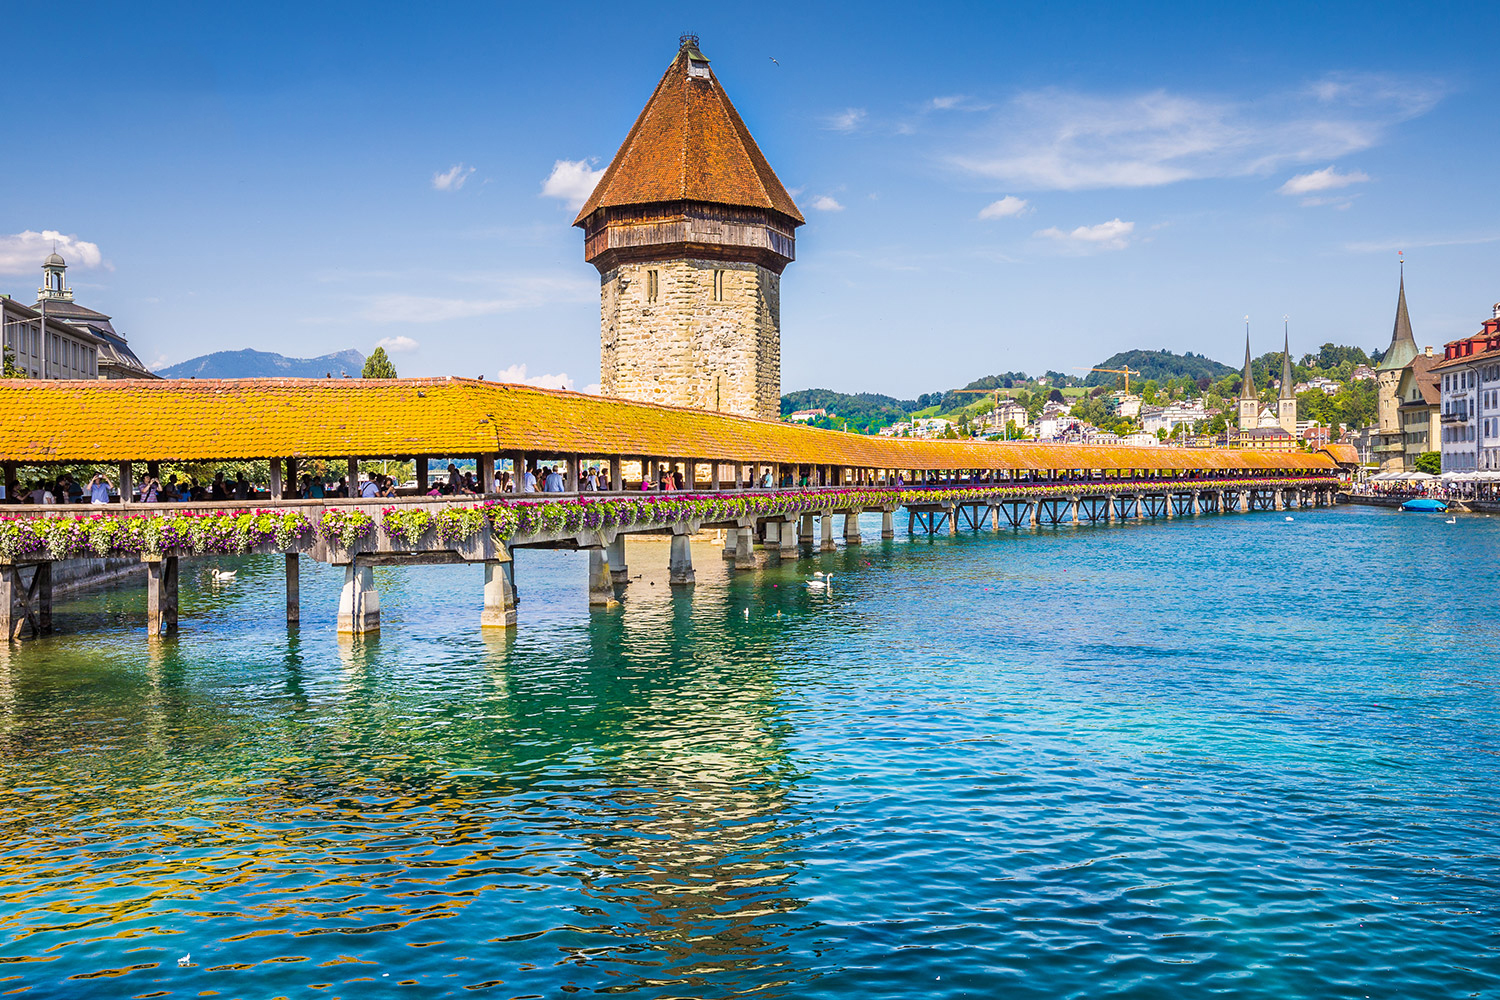 Tour du lịch Thụy Sĩ giá rẻ